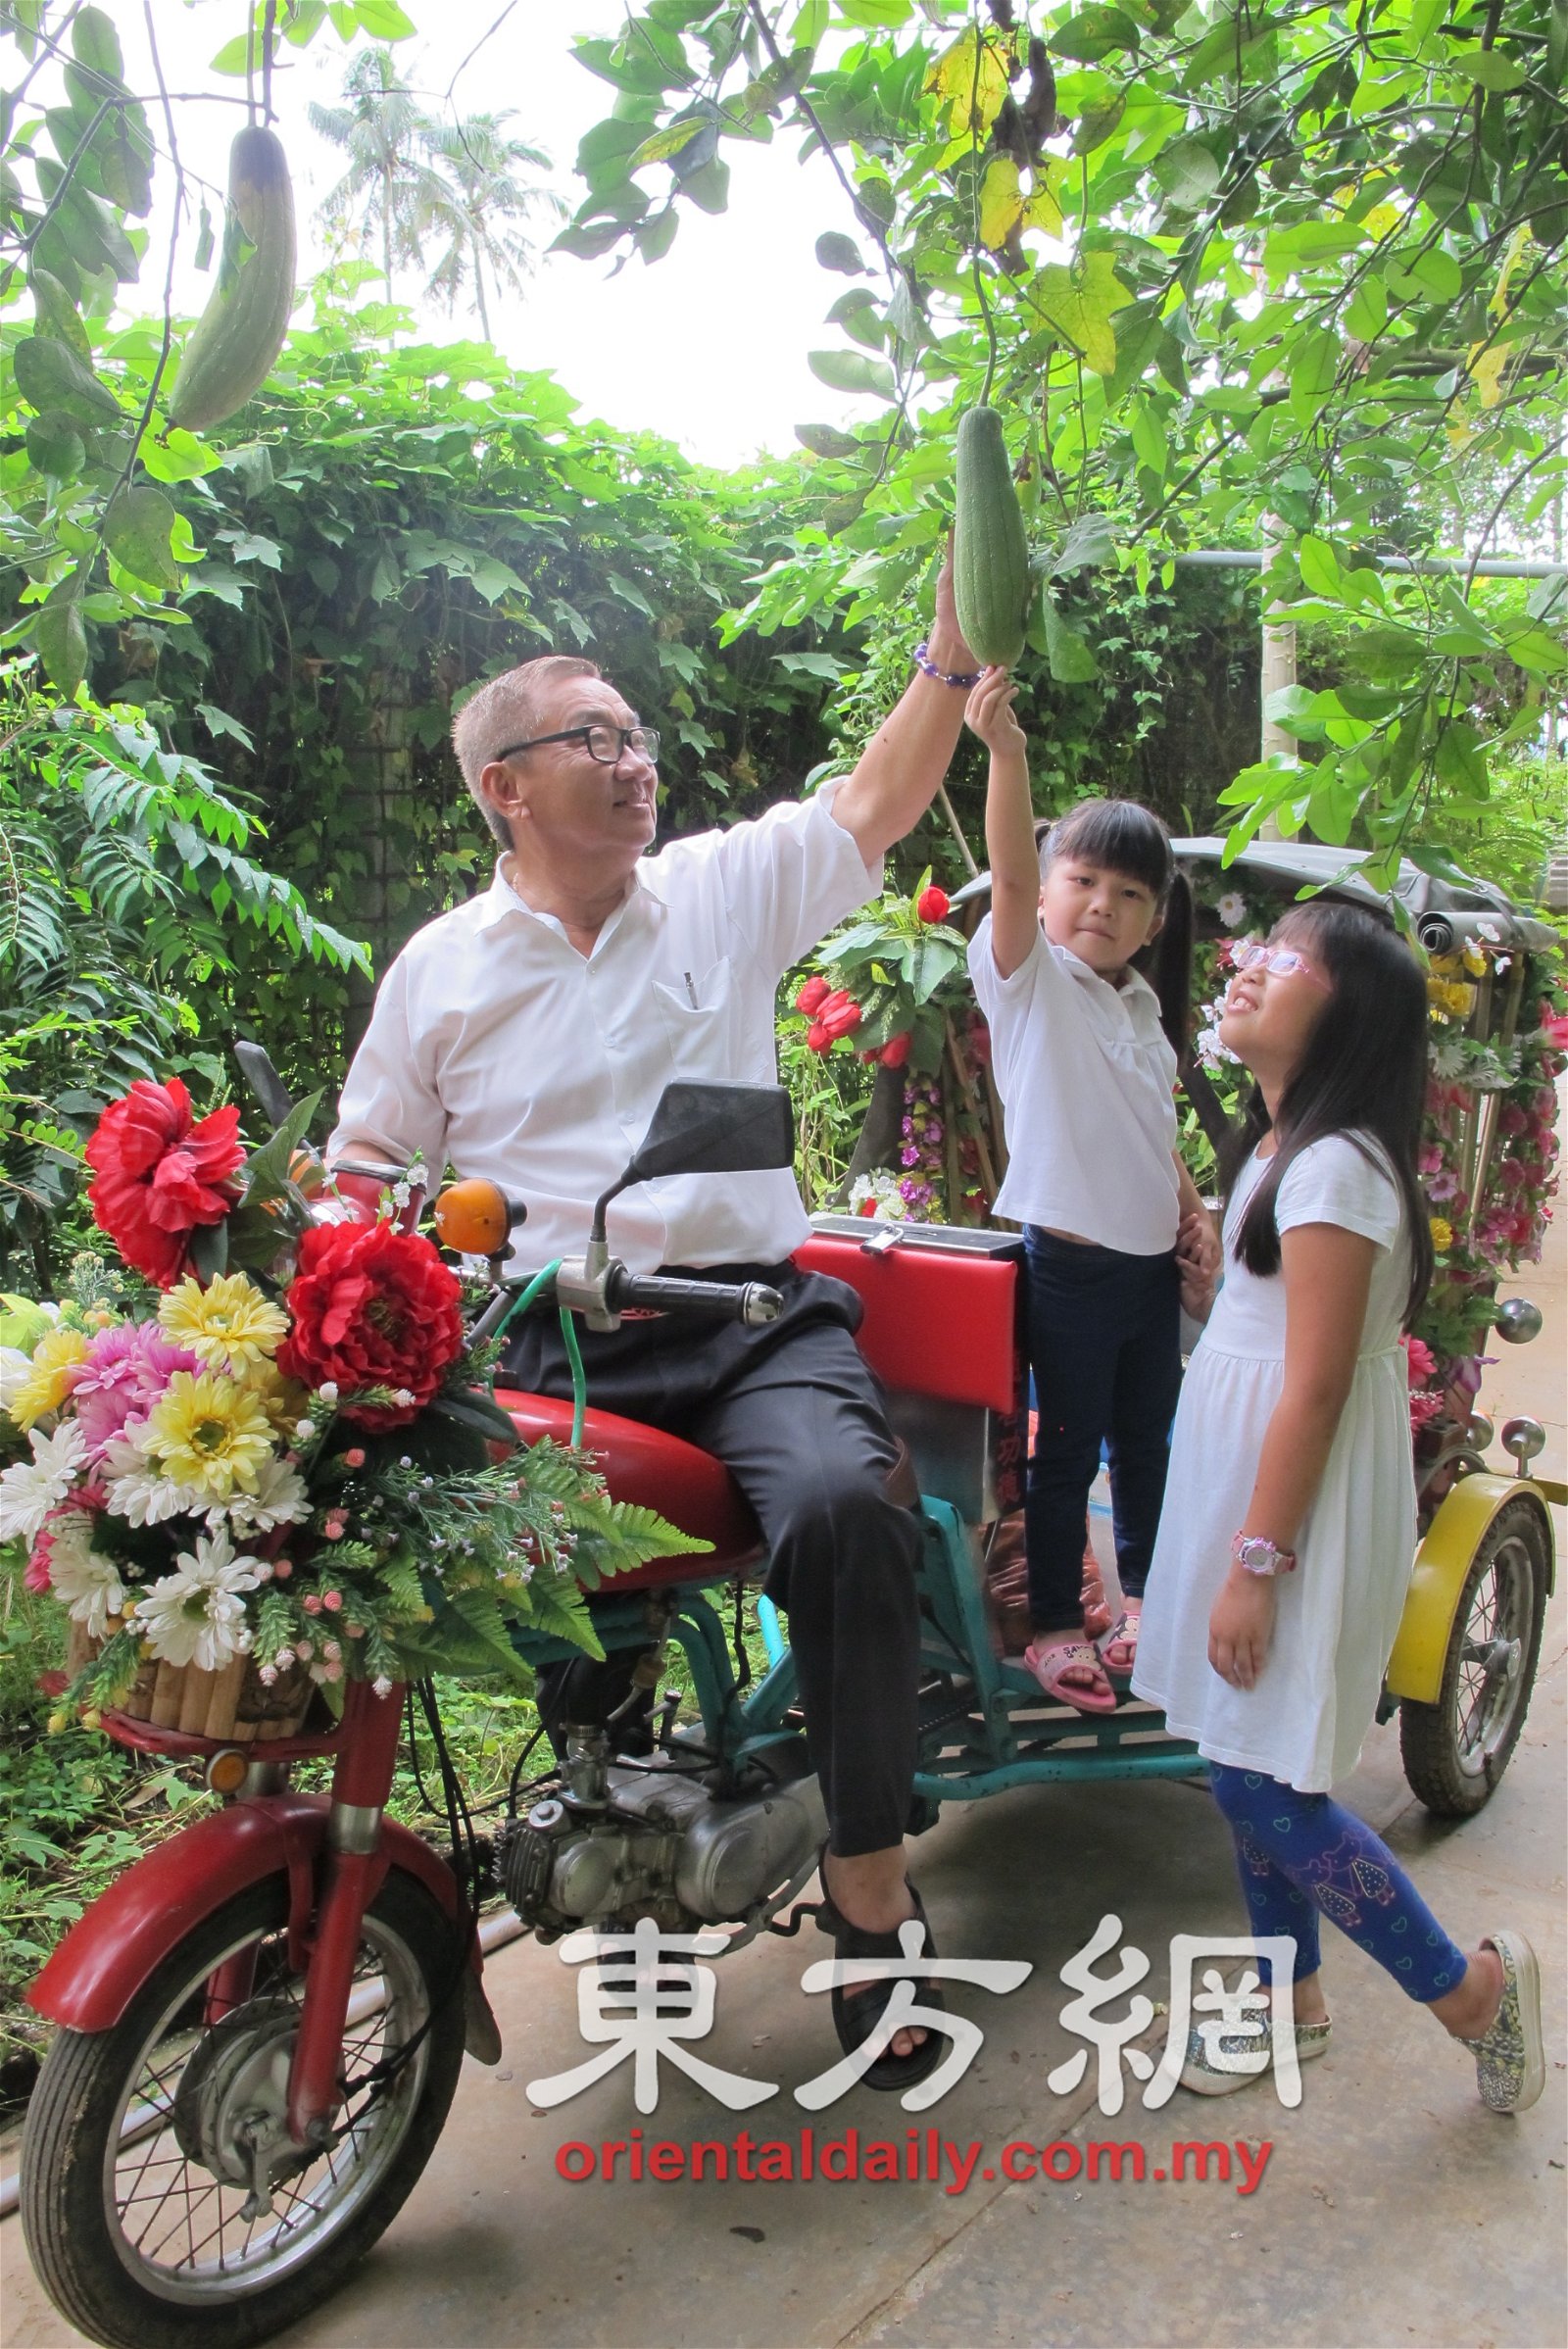 李添霖载著孩童欣赏长在竹藤下的丝瓜。